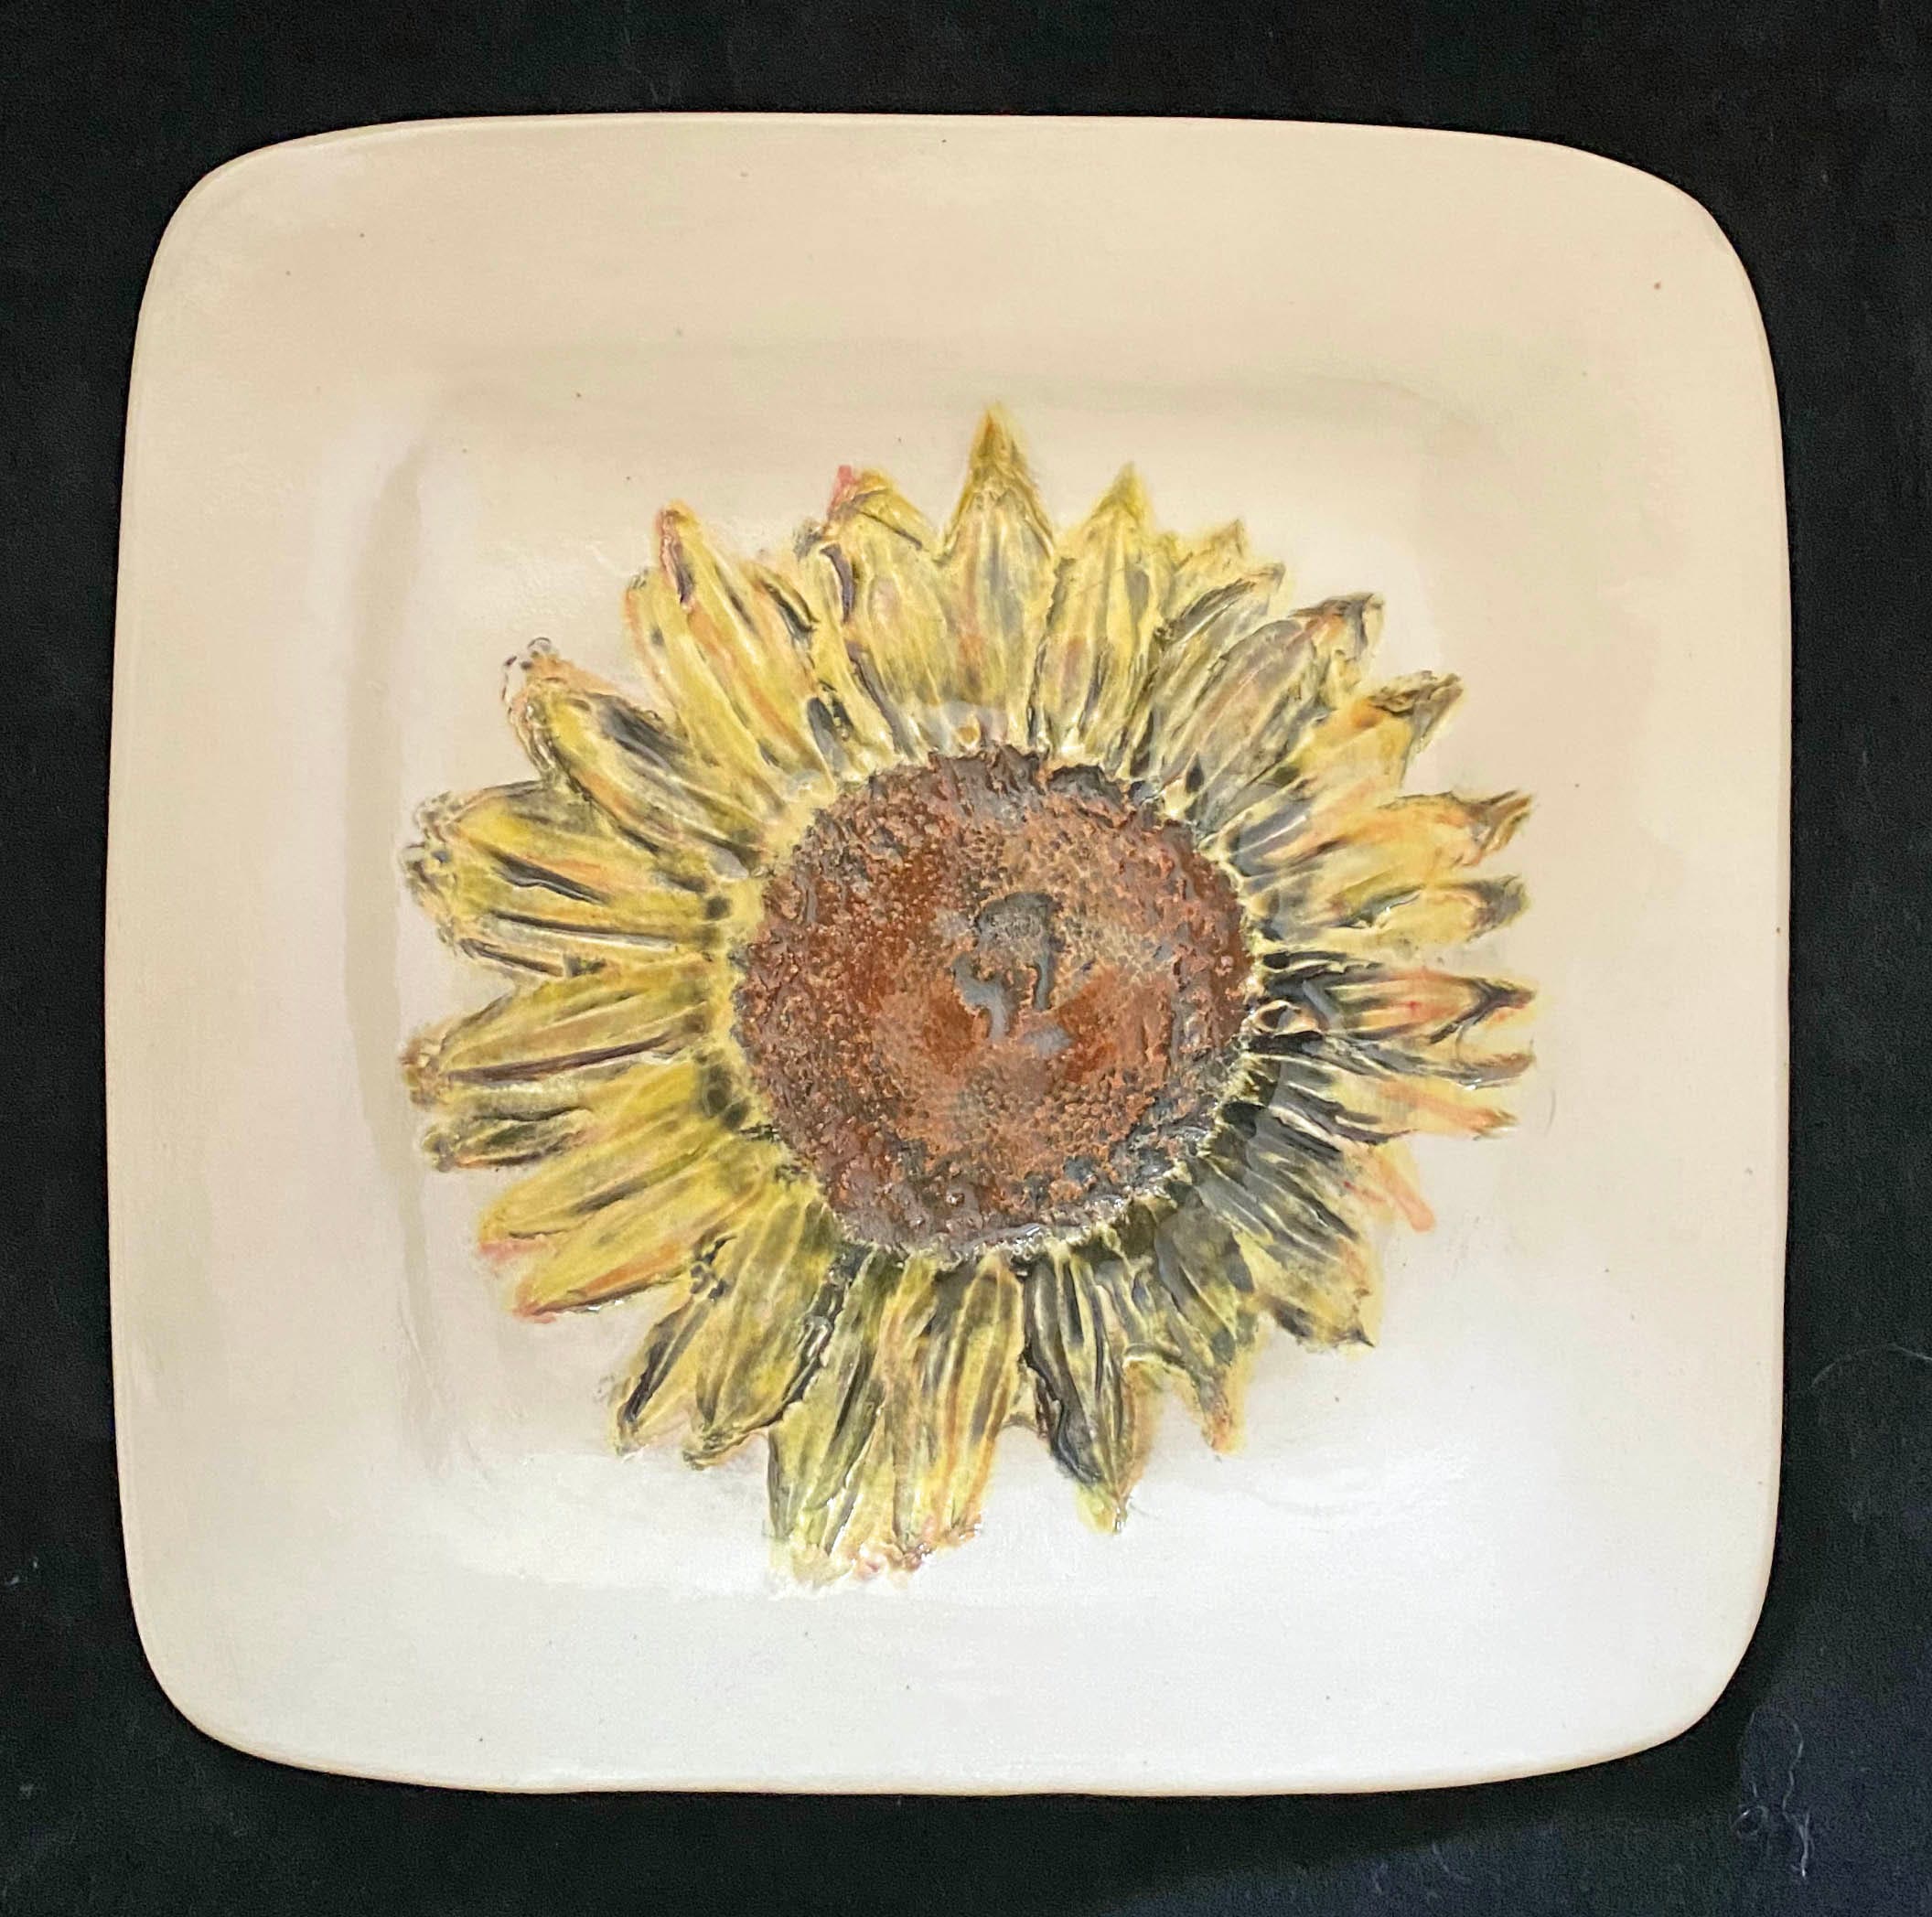 7" Sunflower Plate